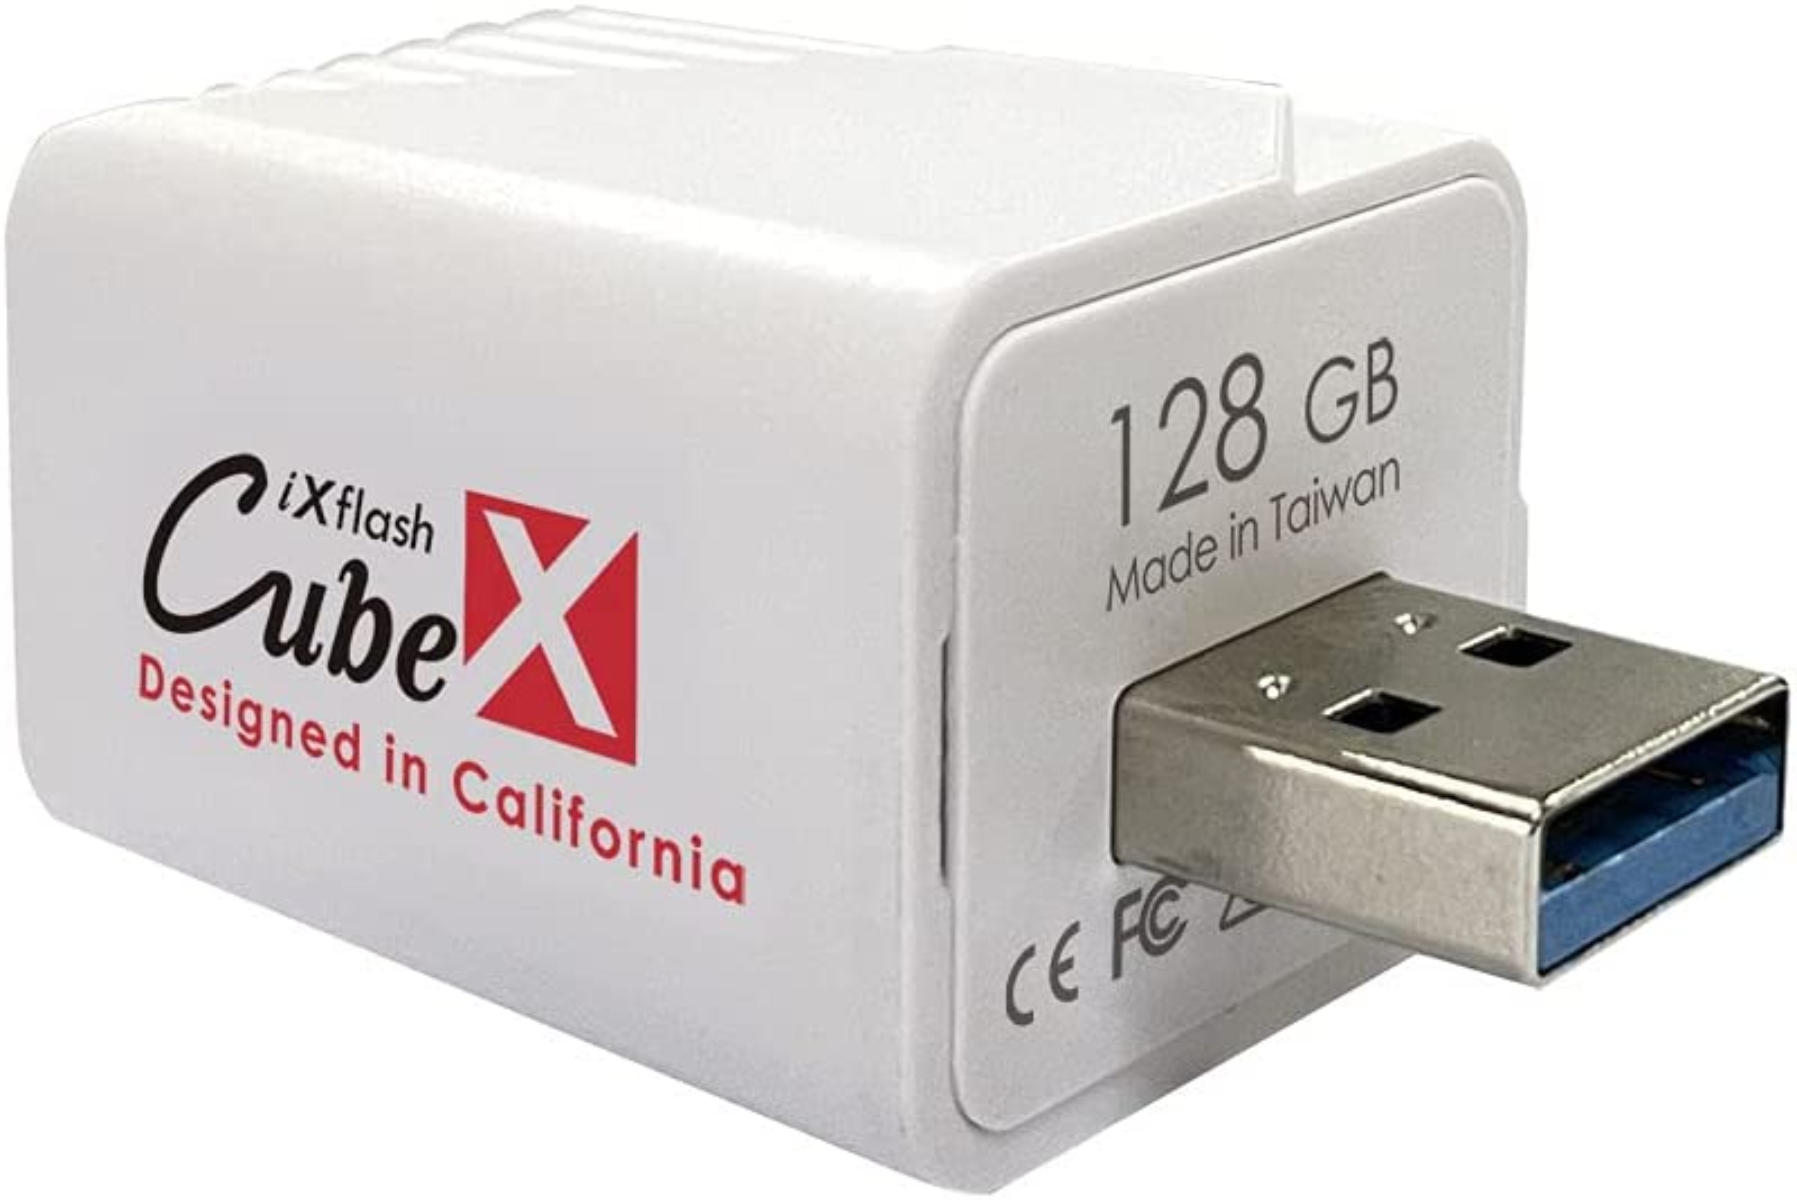 PIODATA iXflash Cube USB-A GB) 128 (Weiß